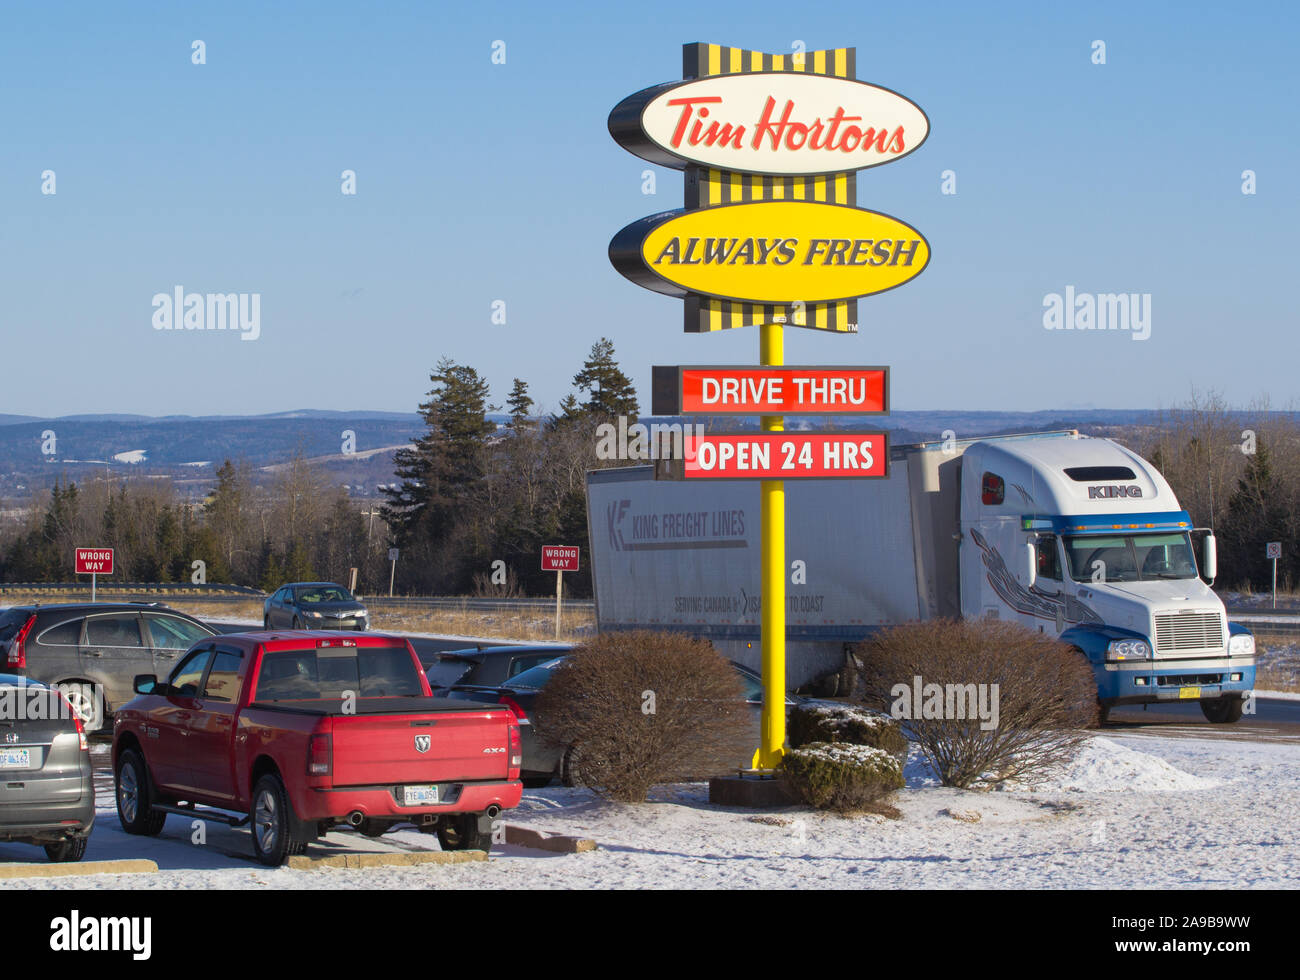 Truro, Canada - Février 09, 2018 : Tim Hortons à côté de l'autoroute 102, de la Nouvelle-Écosse. Tim Hortons est une chaîne de restaurants canadienne connue pour son café un Banque D'Images